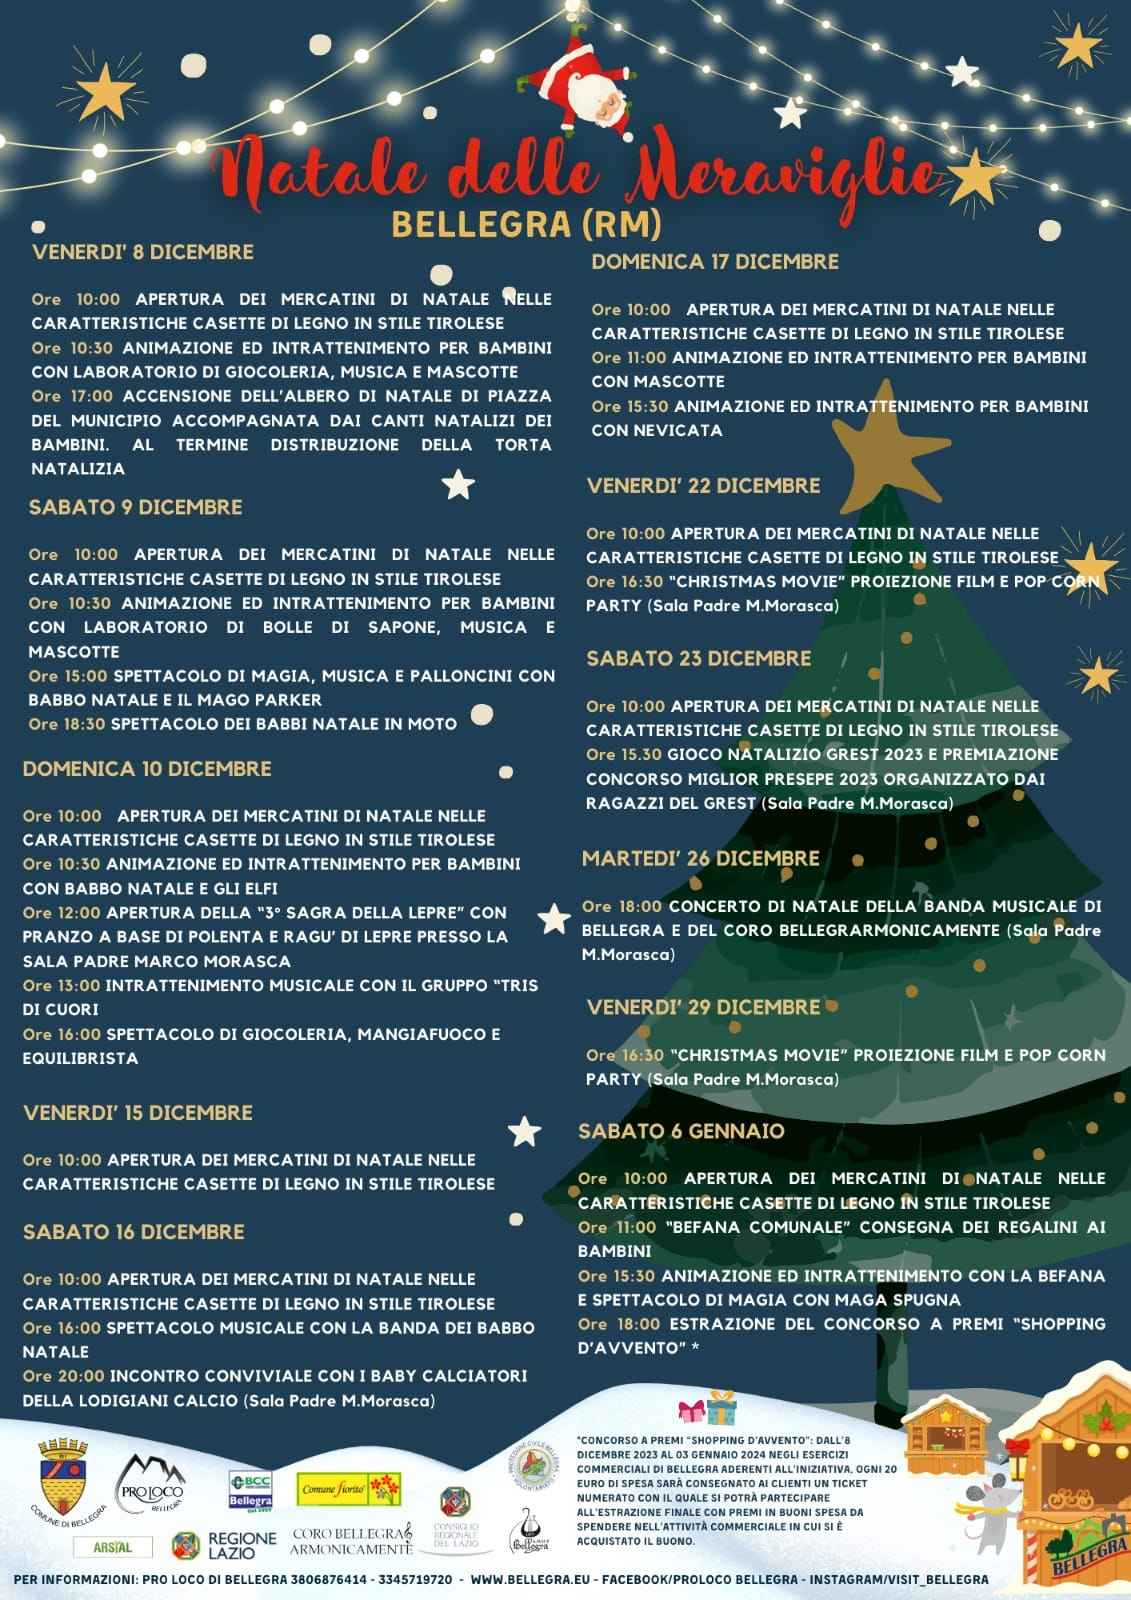 Bellegra (RM)
"Mercatini di Natale"
dall'8 Dicembre al 6 Gennaio 2023